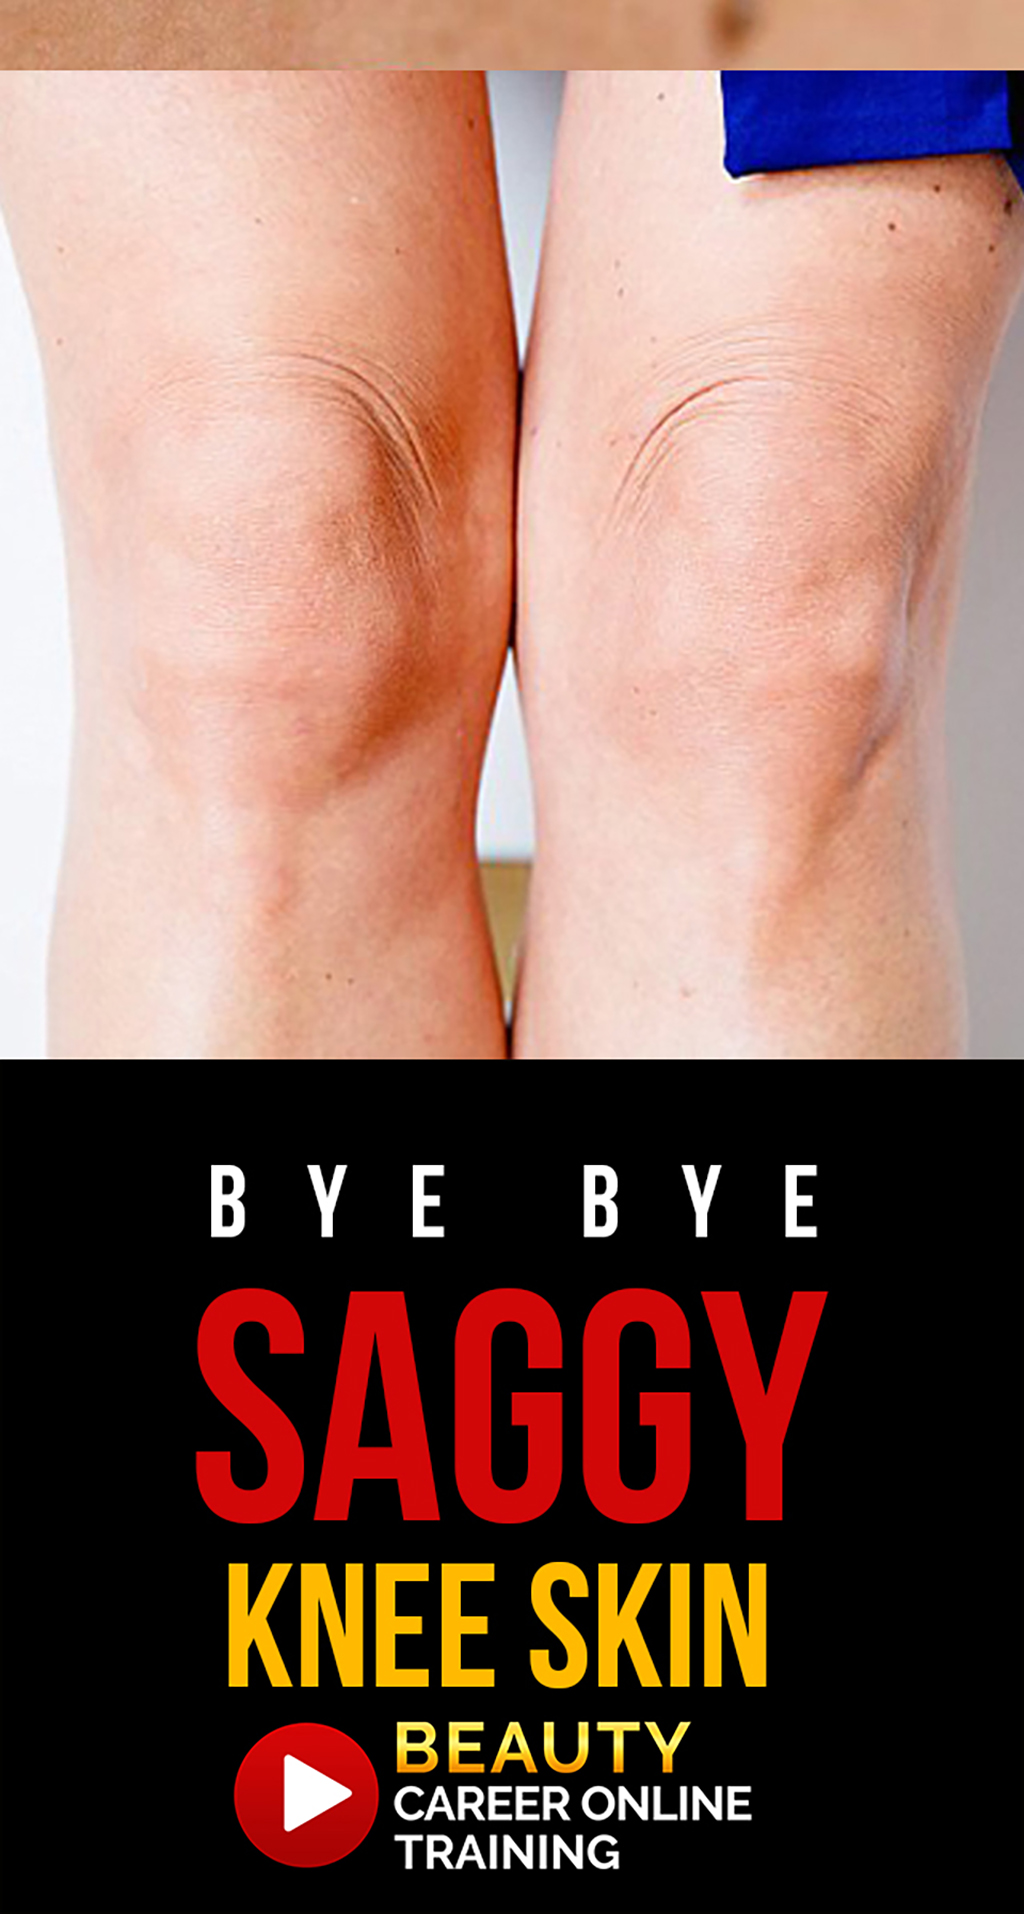 Knee skin, saggy knee skin, loose skin knees